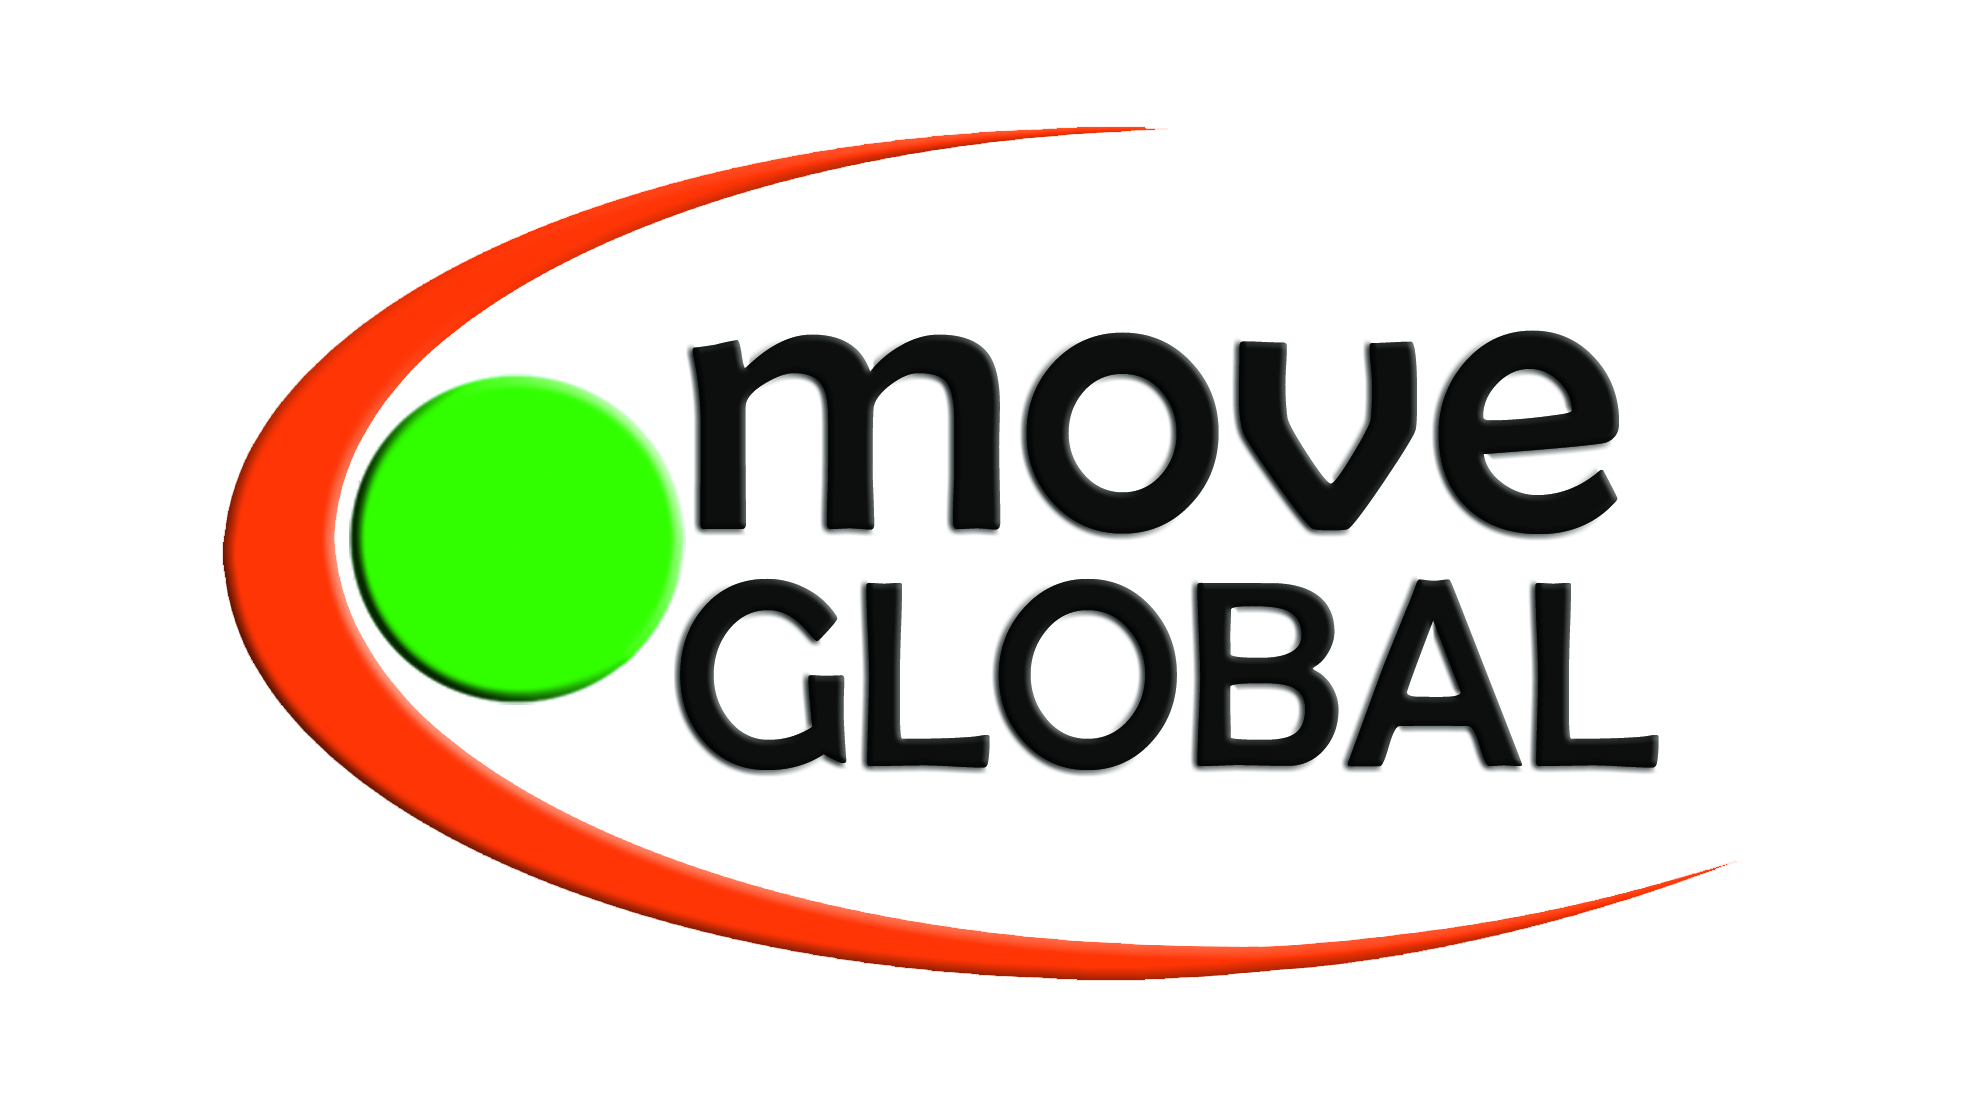 Logo moveGLOBAL e.V.